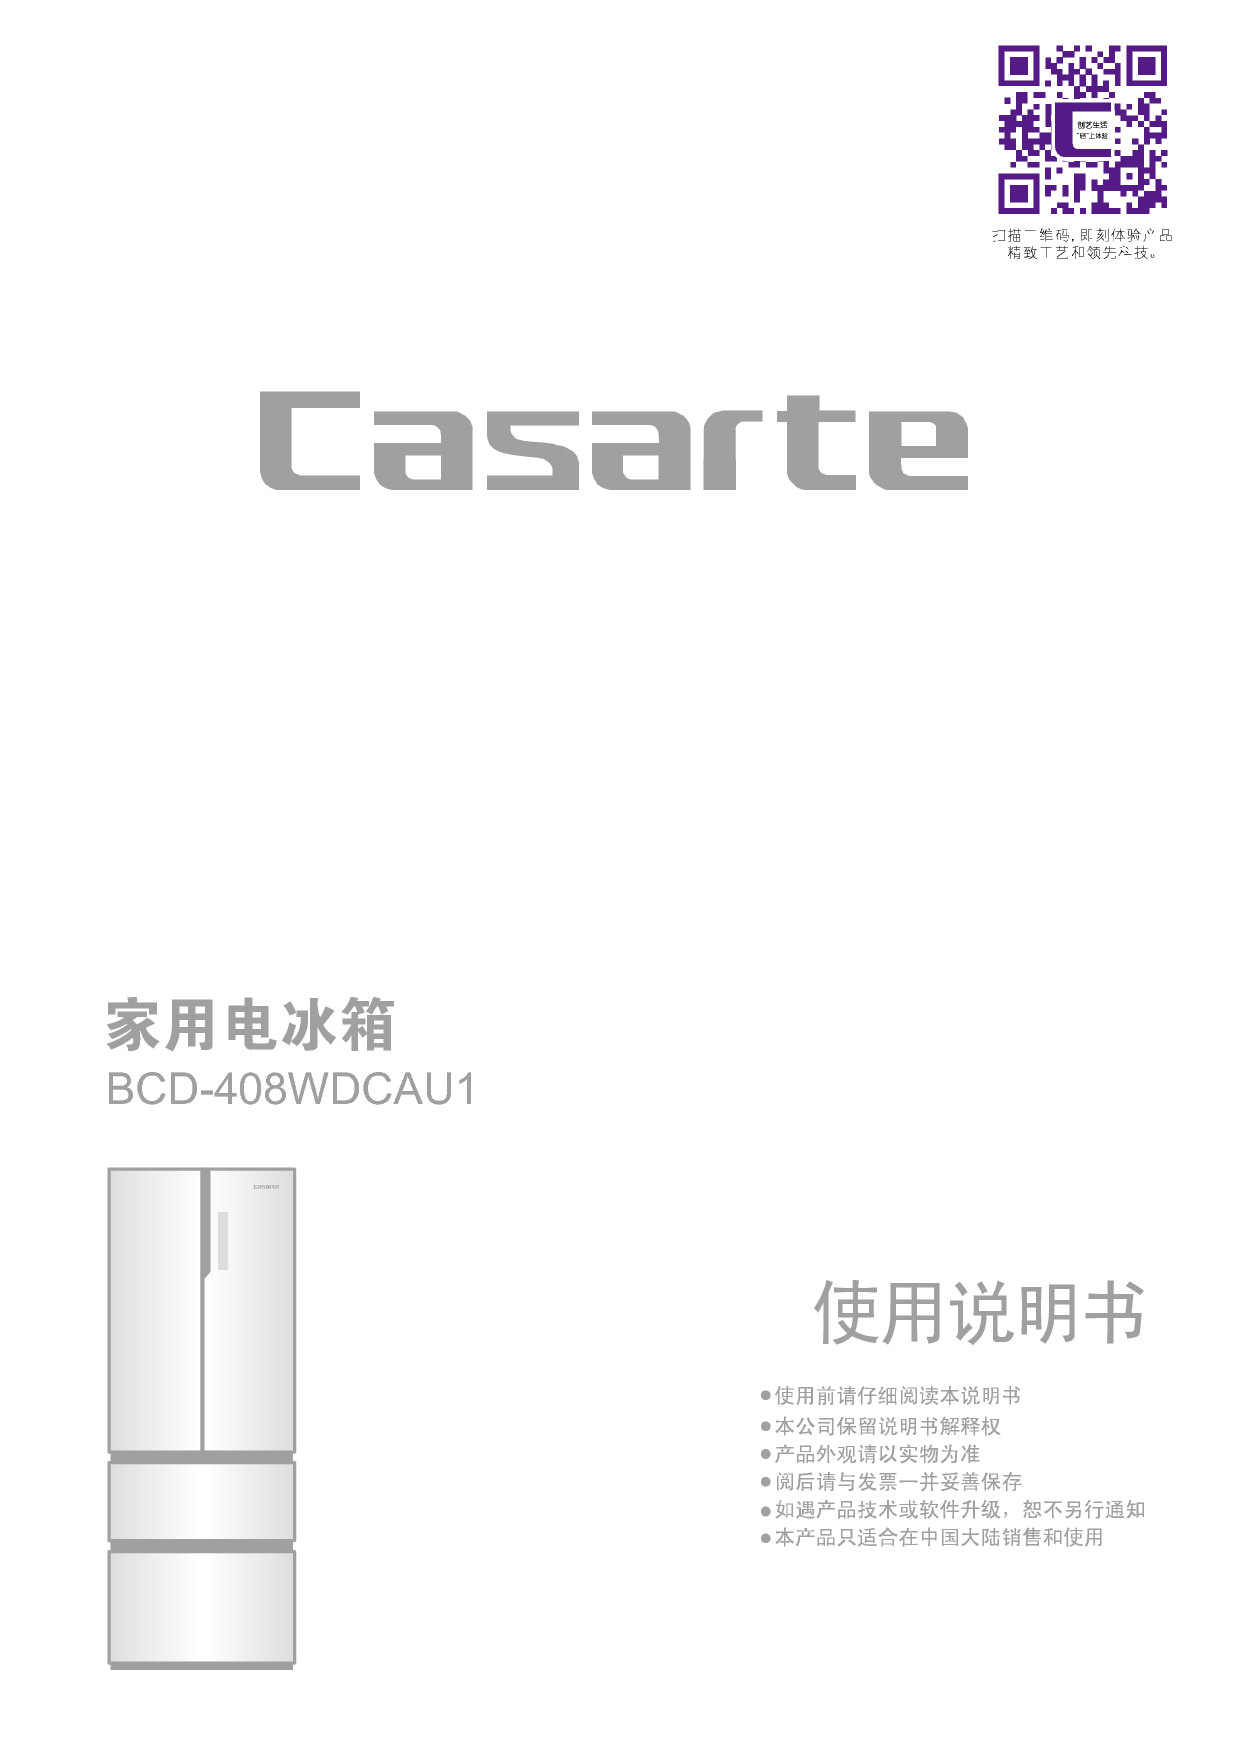 卡萨帝 Casarte BCD-408WDCAU1 使用说明书 封面